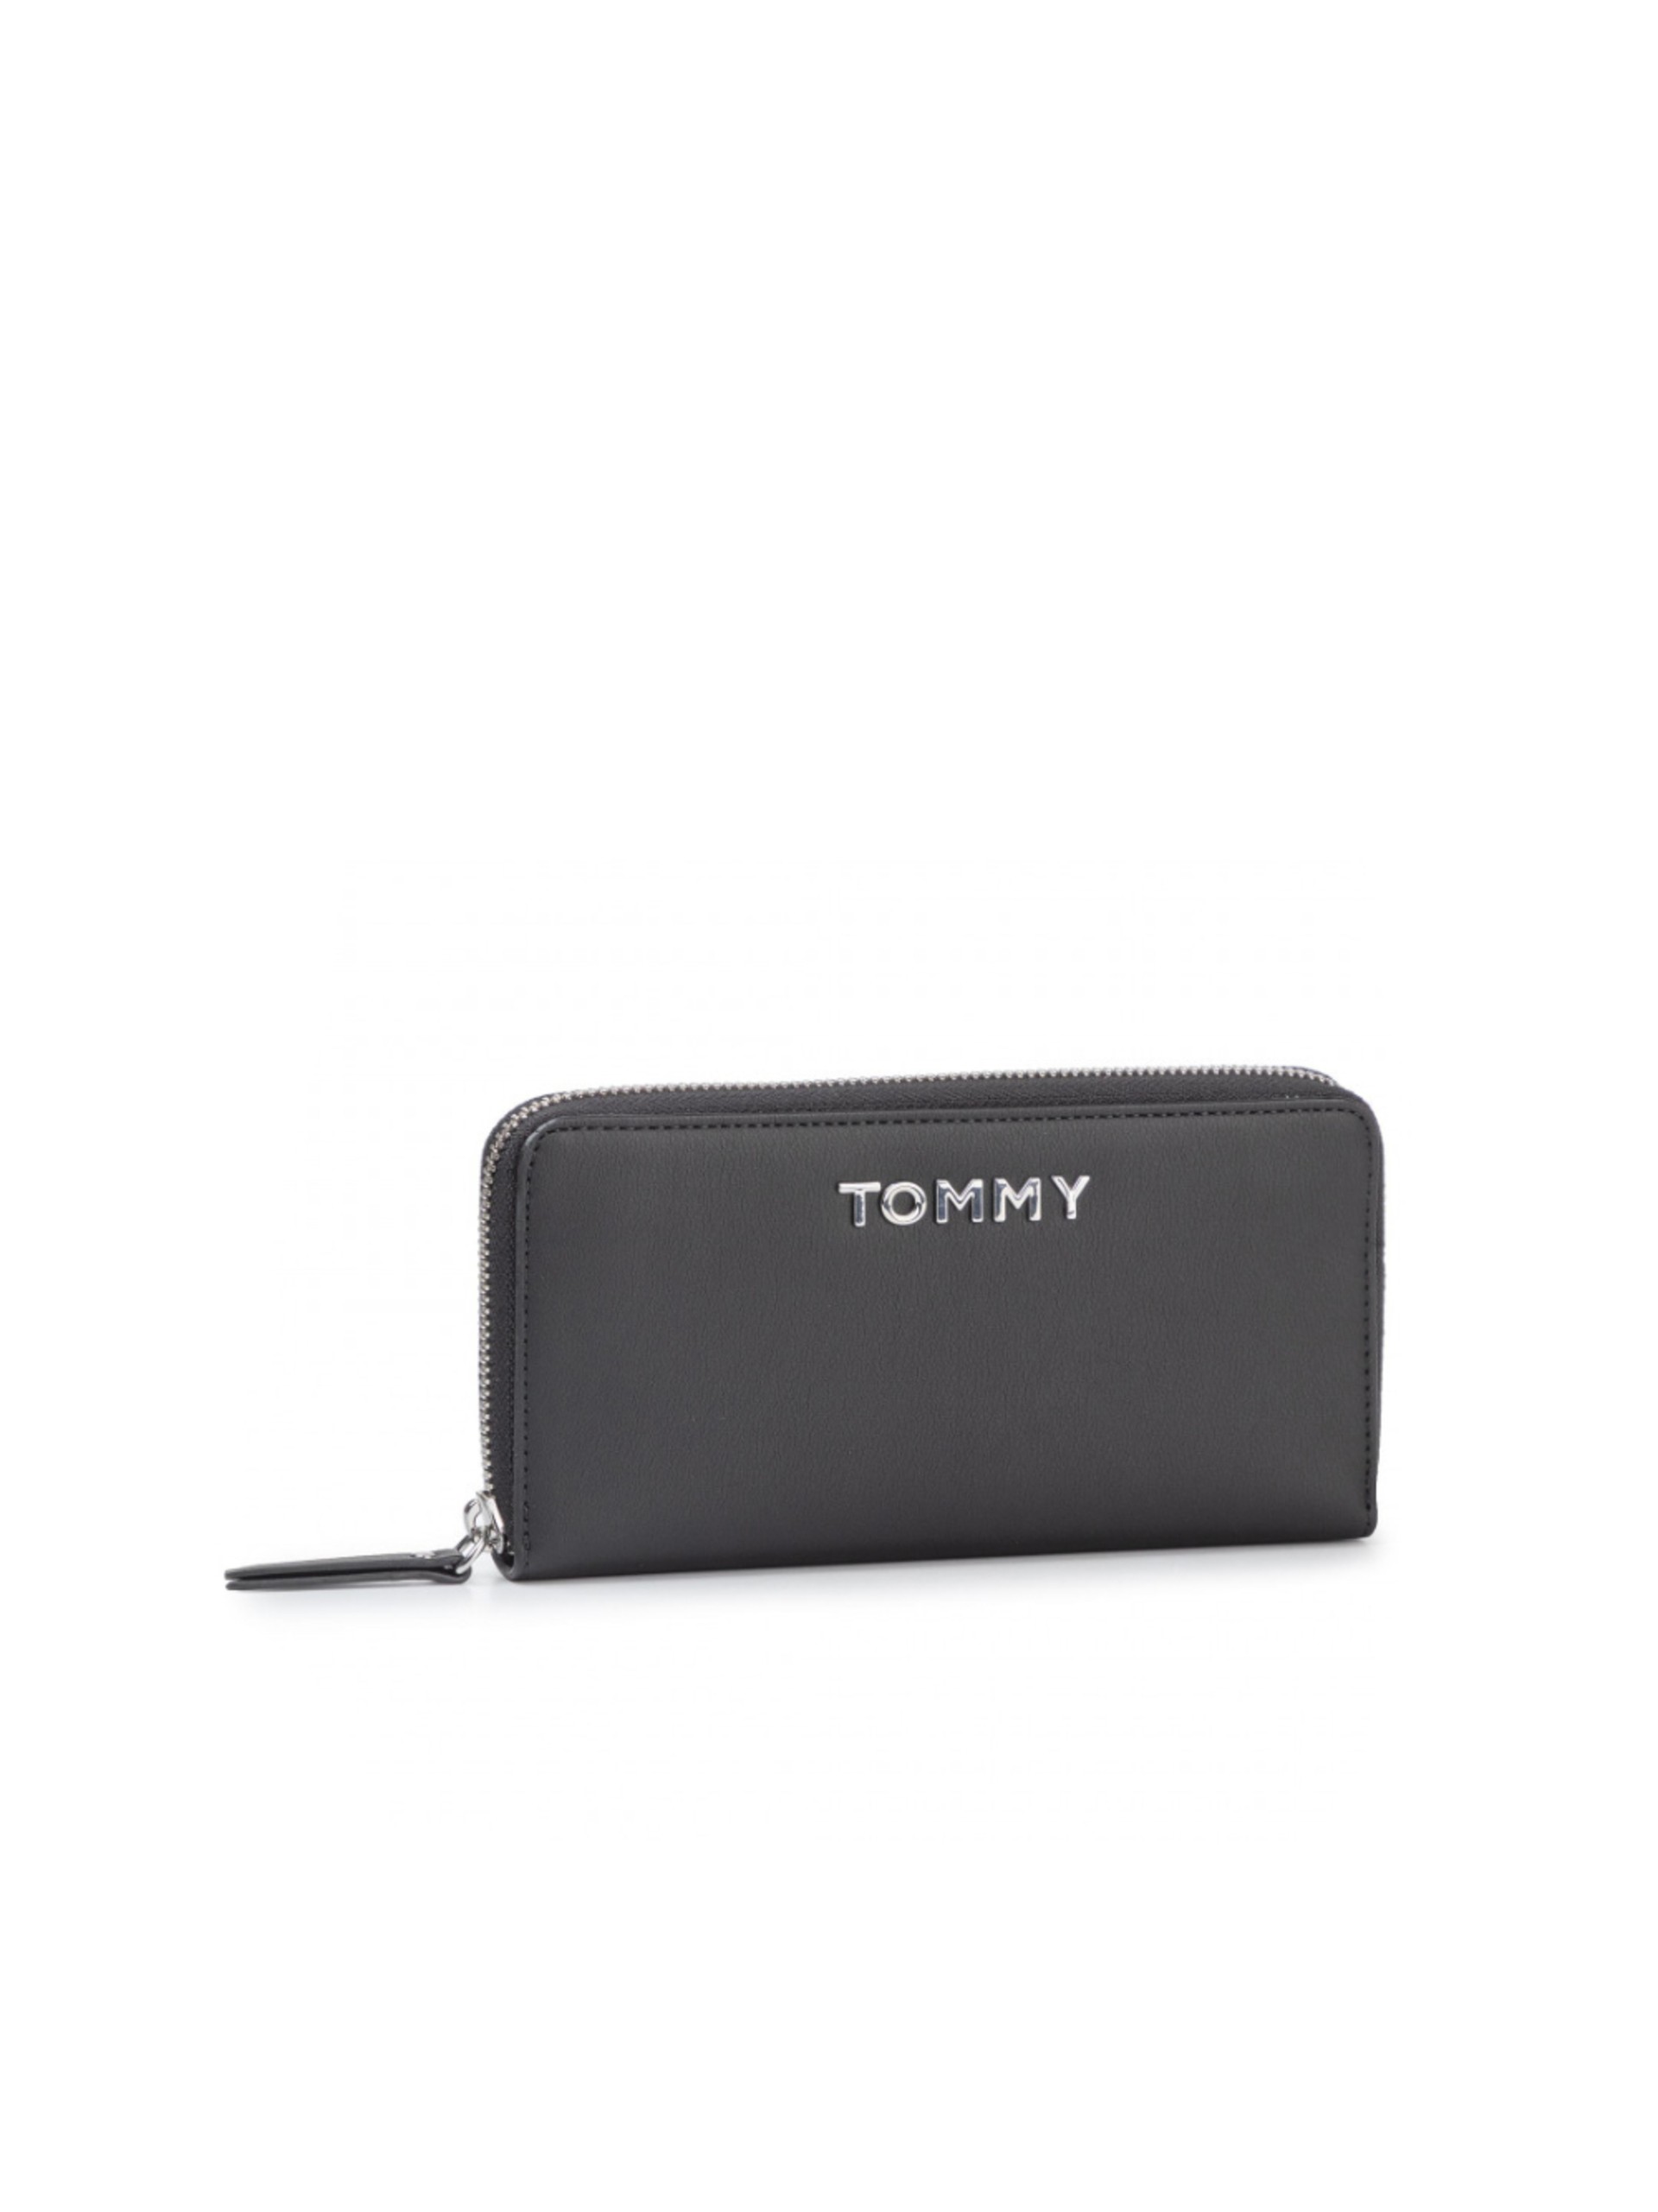 Tommy Hilfiger dámská černá peněženka - OS (0H4)